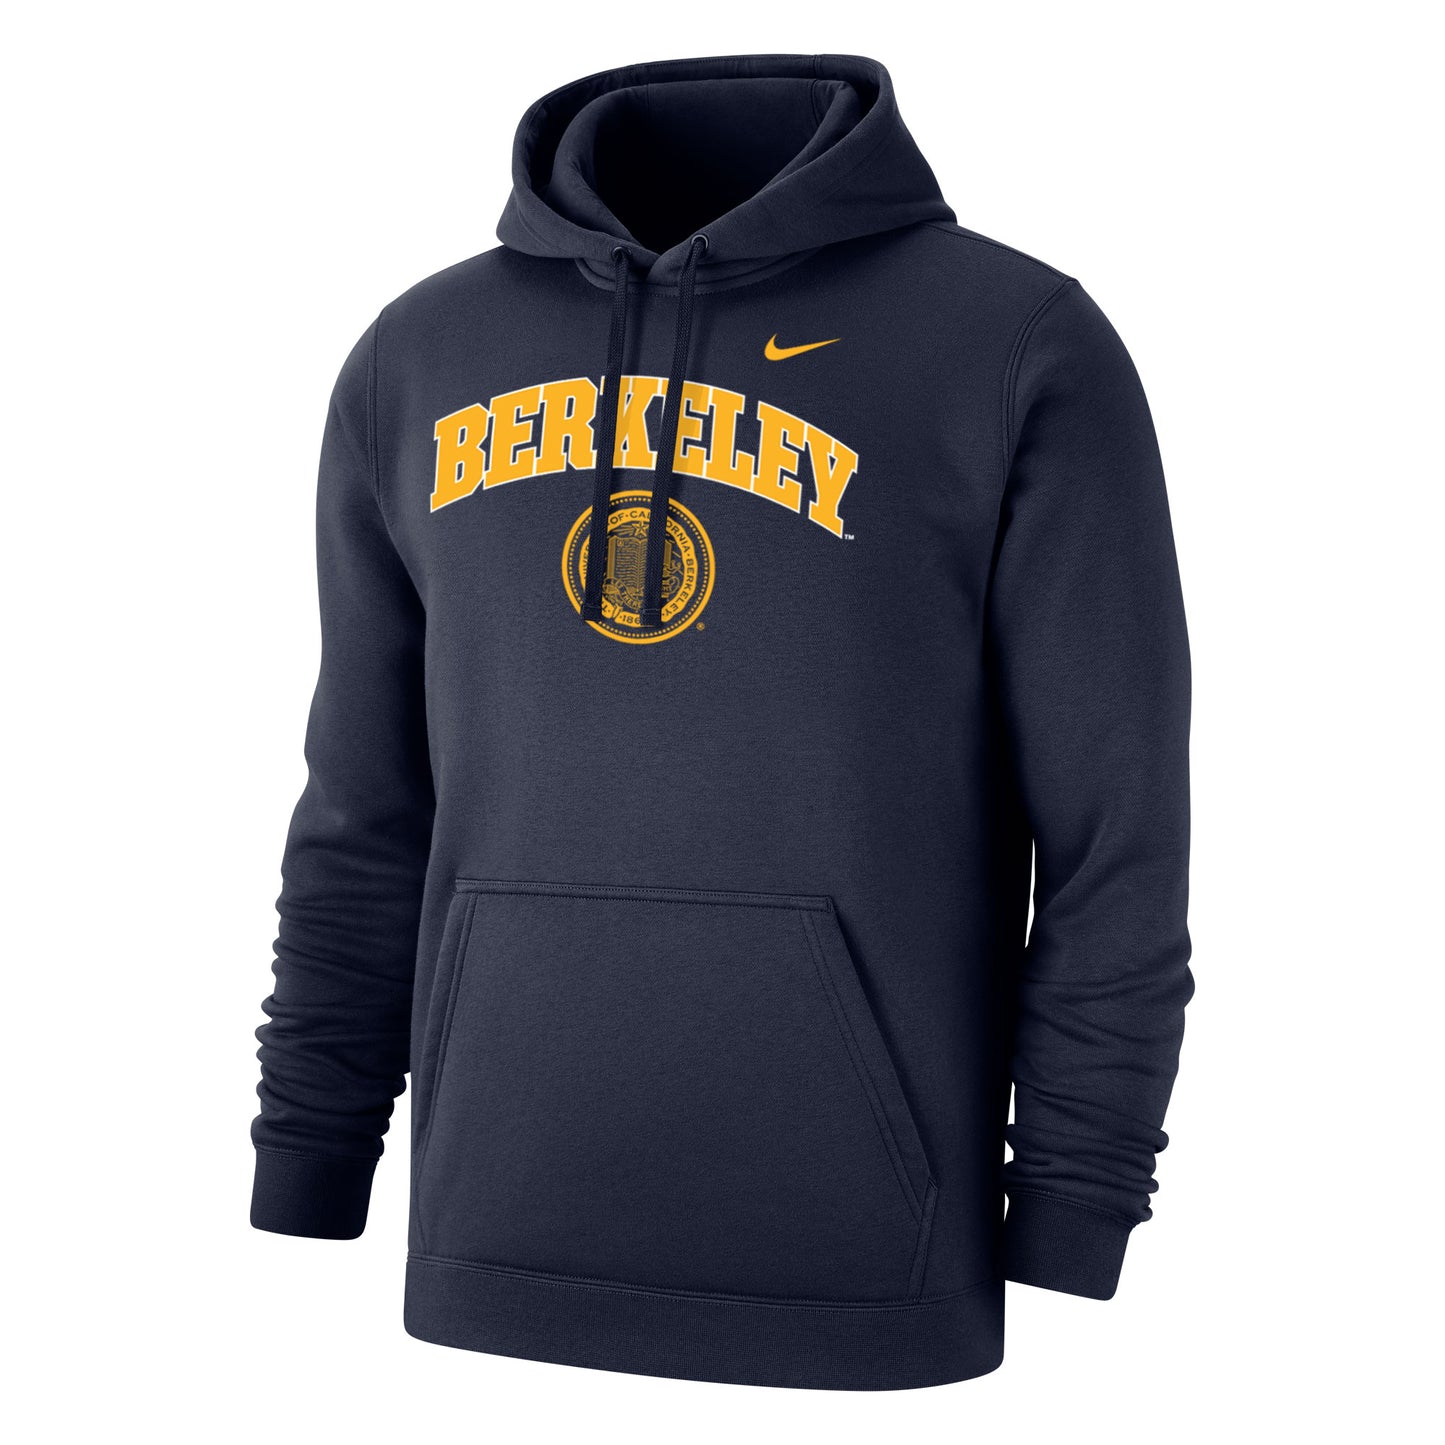 U.C. Berkeley Cal Berkeley arch & seal Nike hoodie sweatshirt-Navy-Shop College Wear